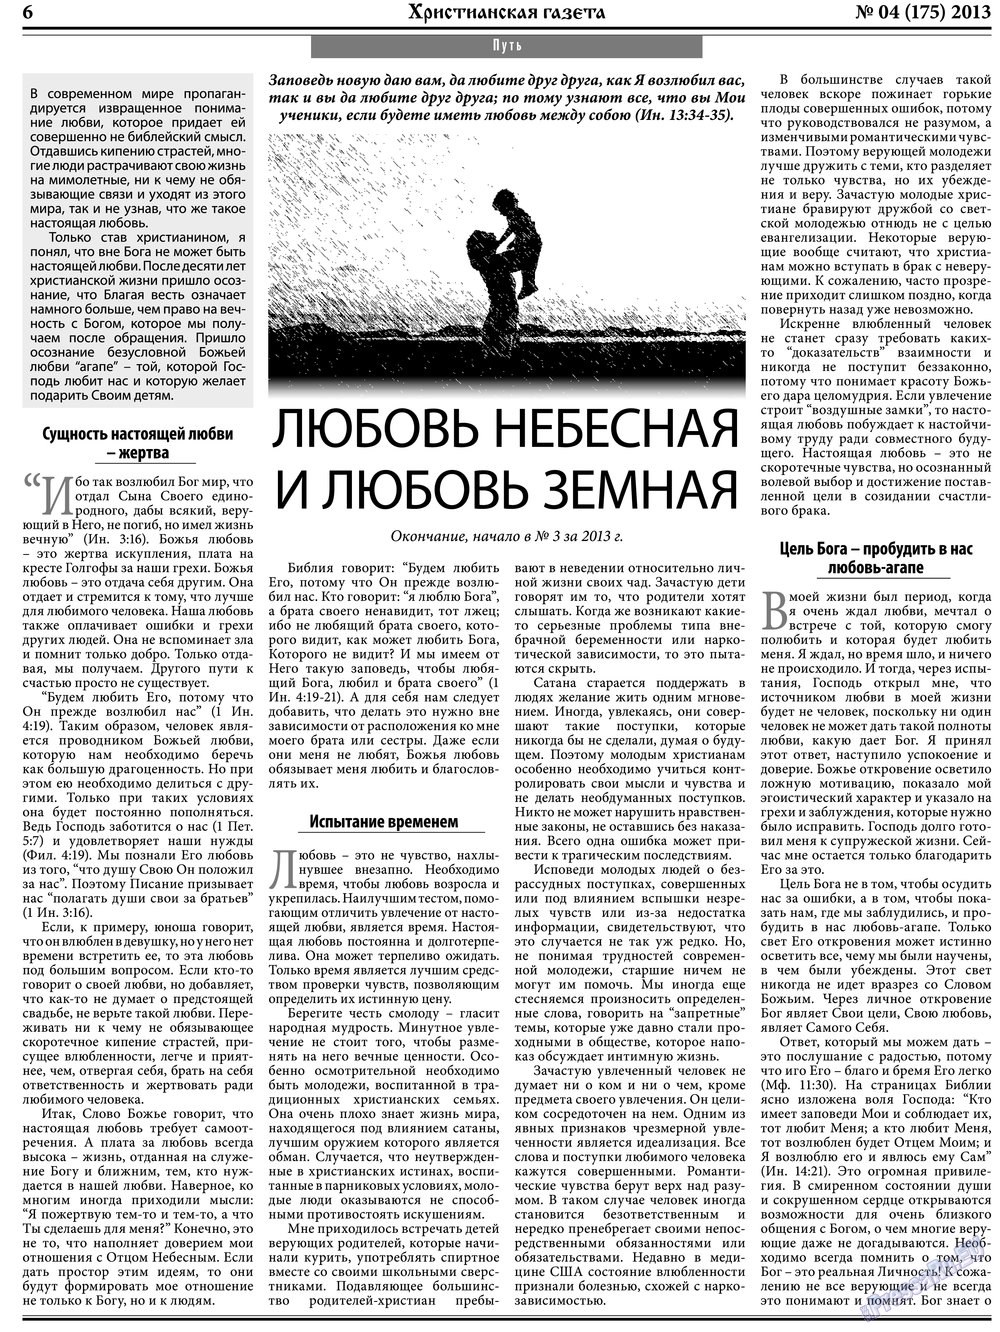 Христианская газета, газета. 2013 №4 стр.6